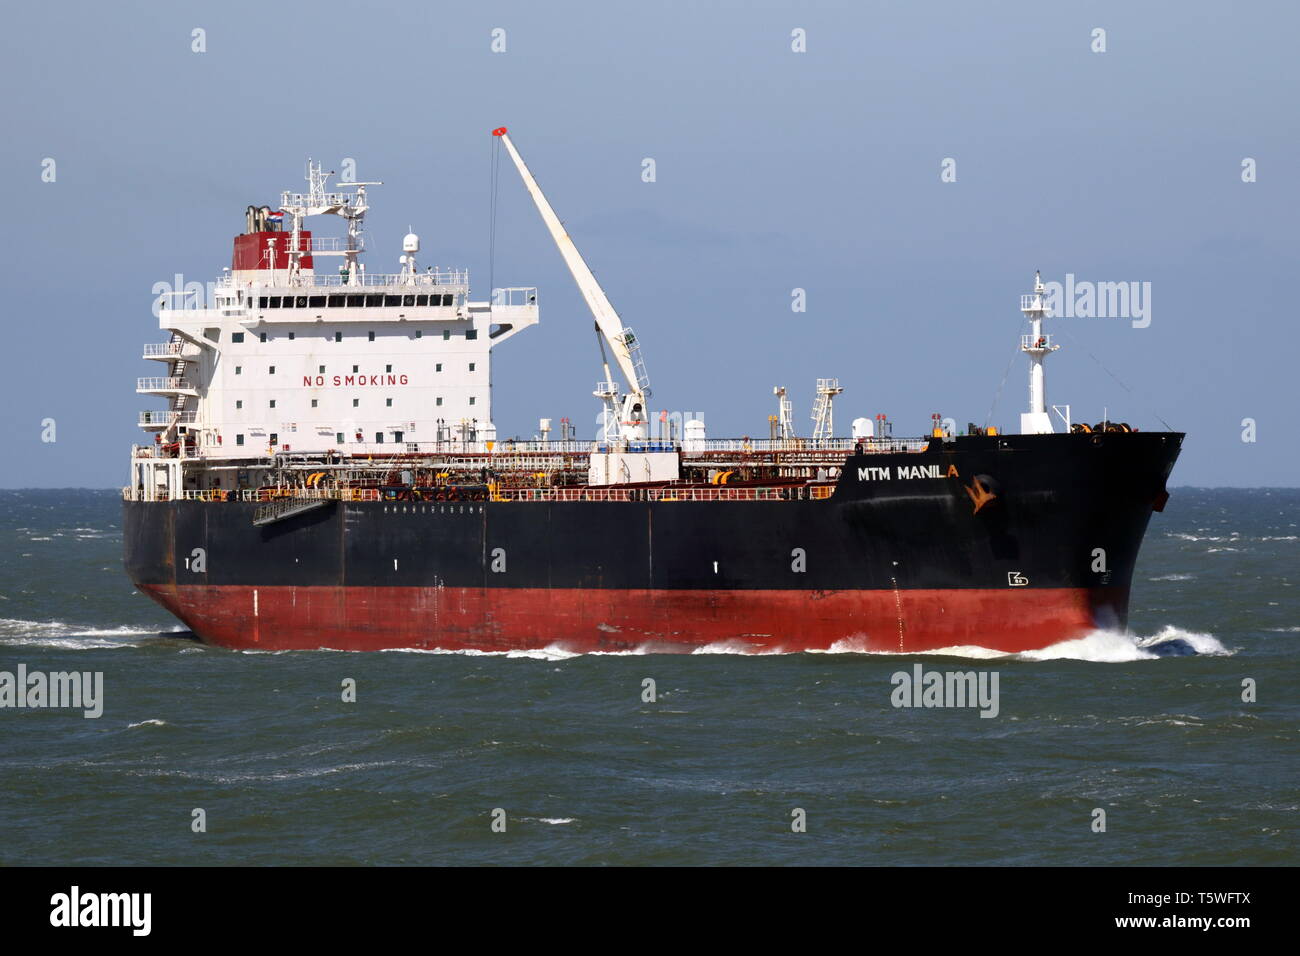 El petrolero MTM pasa de Manila el 10 de abril de 2019, el Maasvlakte en el puerto de Rotterdam. Foto de stock